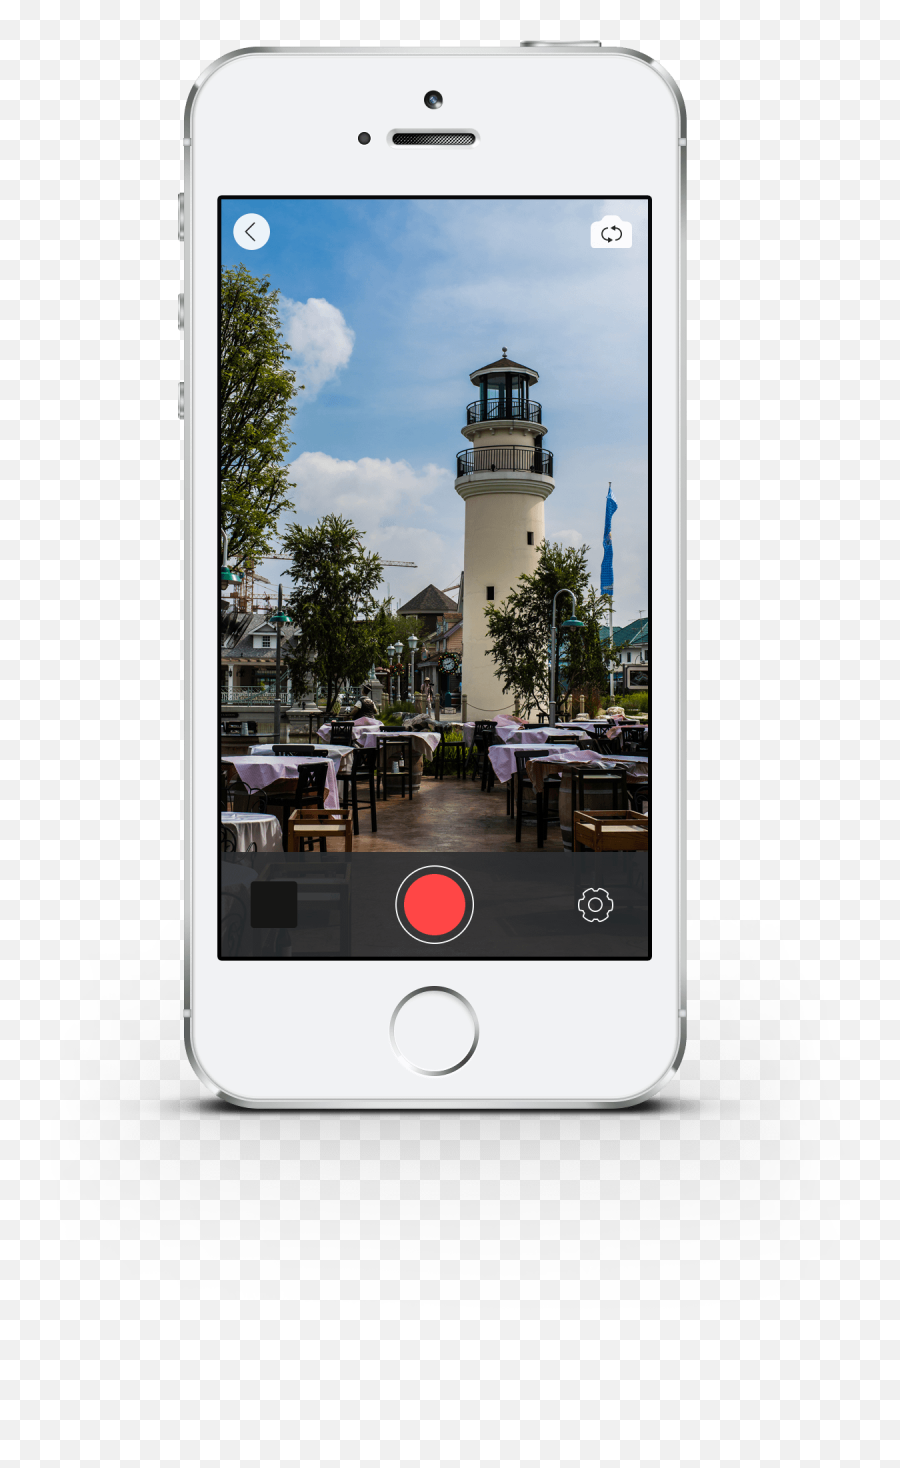 Download Iphone App Design - Mobile Camera App Screen Png,Iphone Camera Png